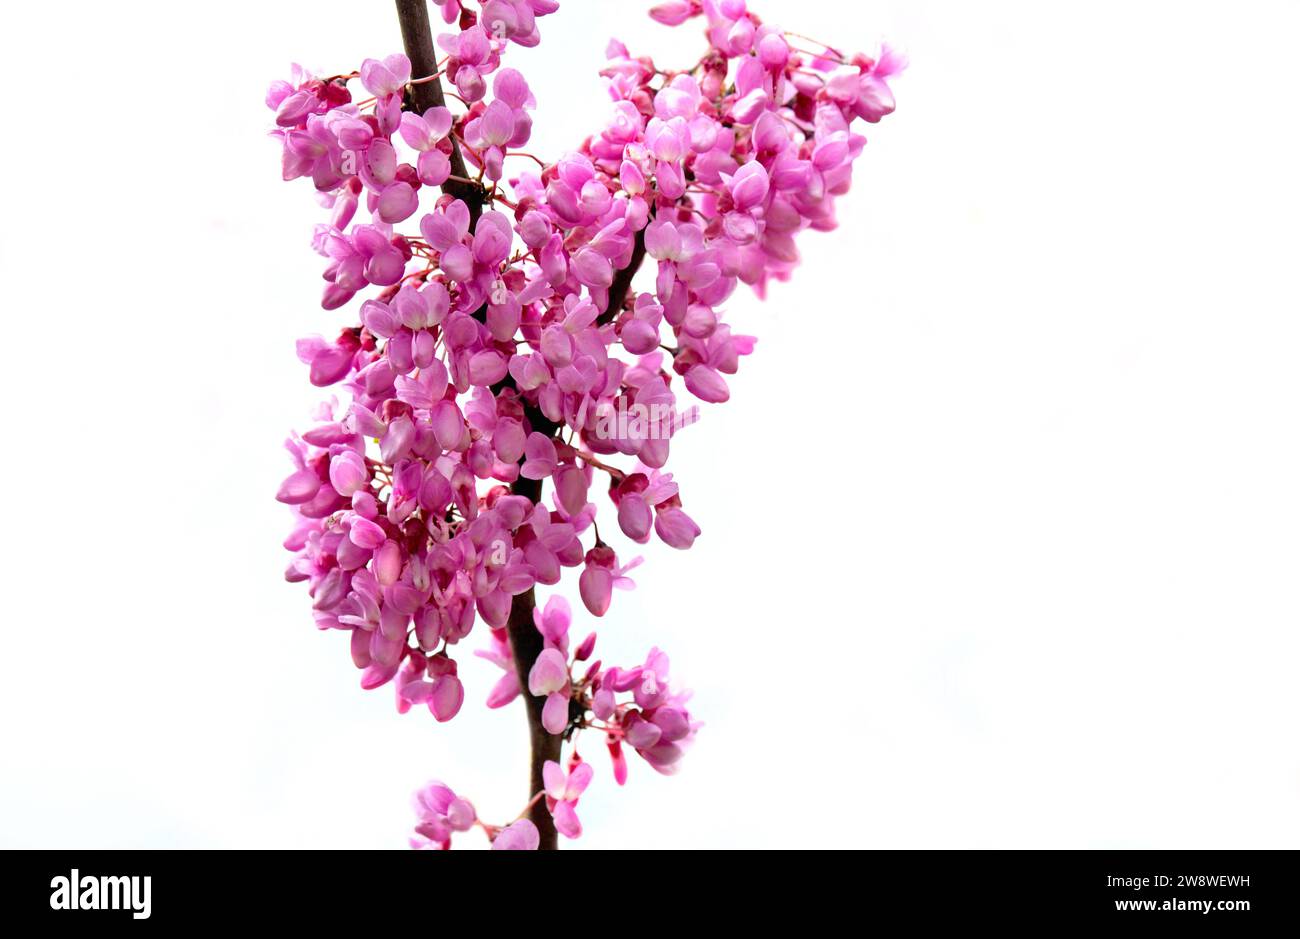 Nahaufnahme der purpurnen Blüten eines judas-Baumes, der in Zweigen auf weißem Hintergrund blüht Stockfoto